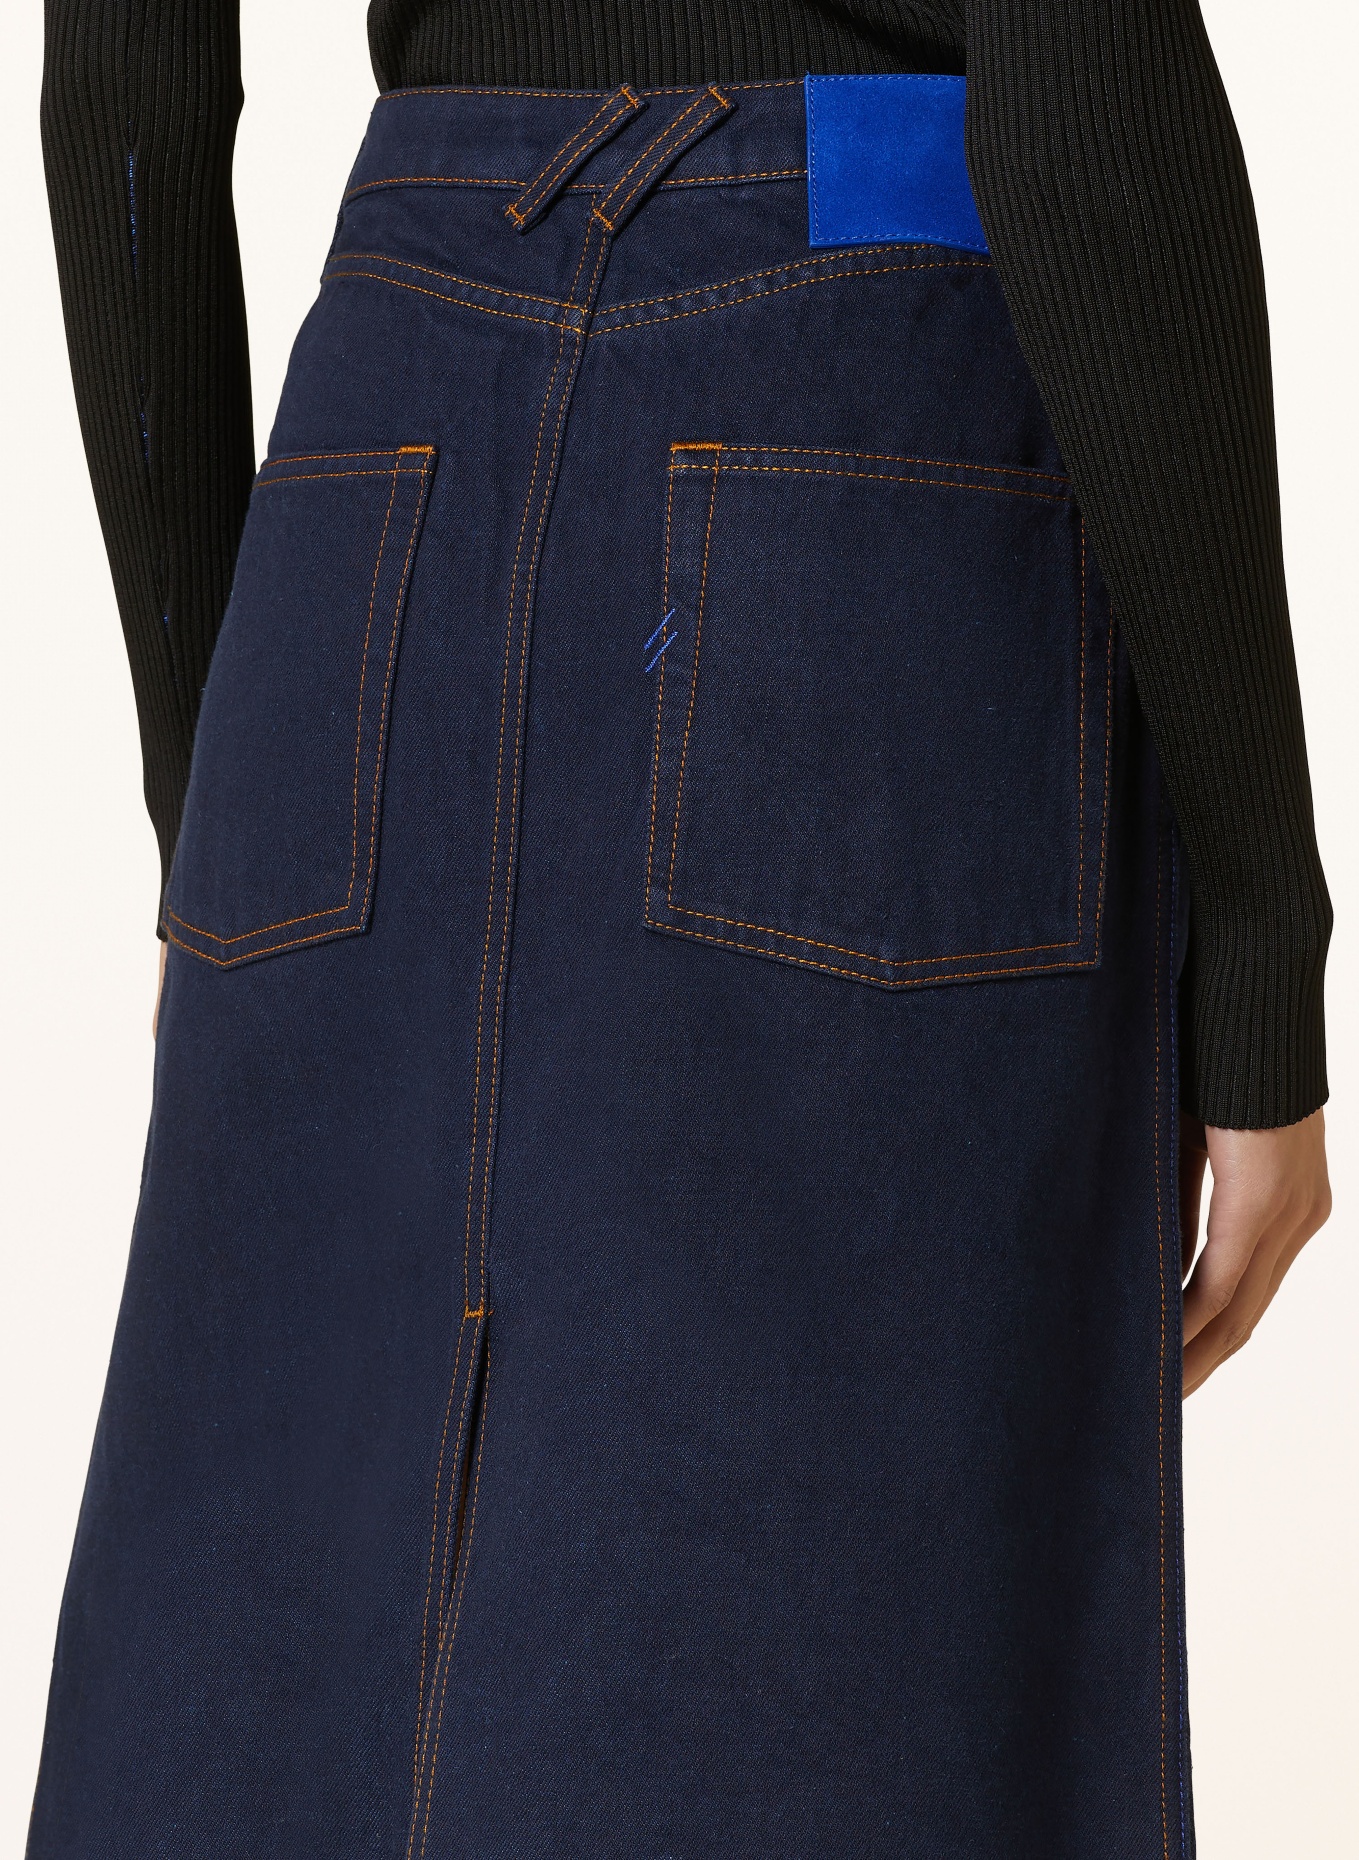 BURBERRY Denim skirt, Color: A1503 INDIGO BLUE (Image 5)